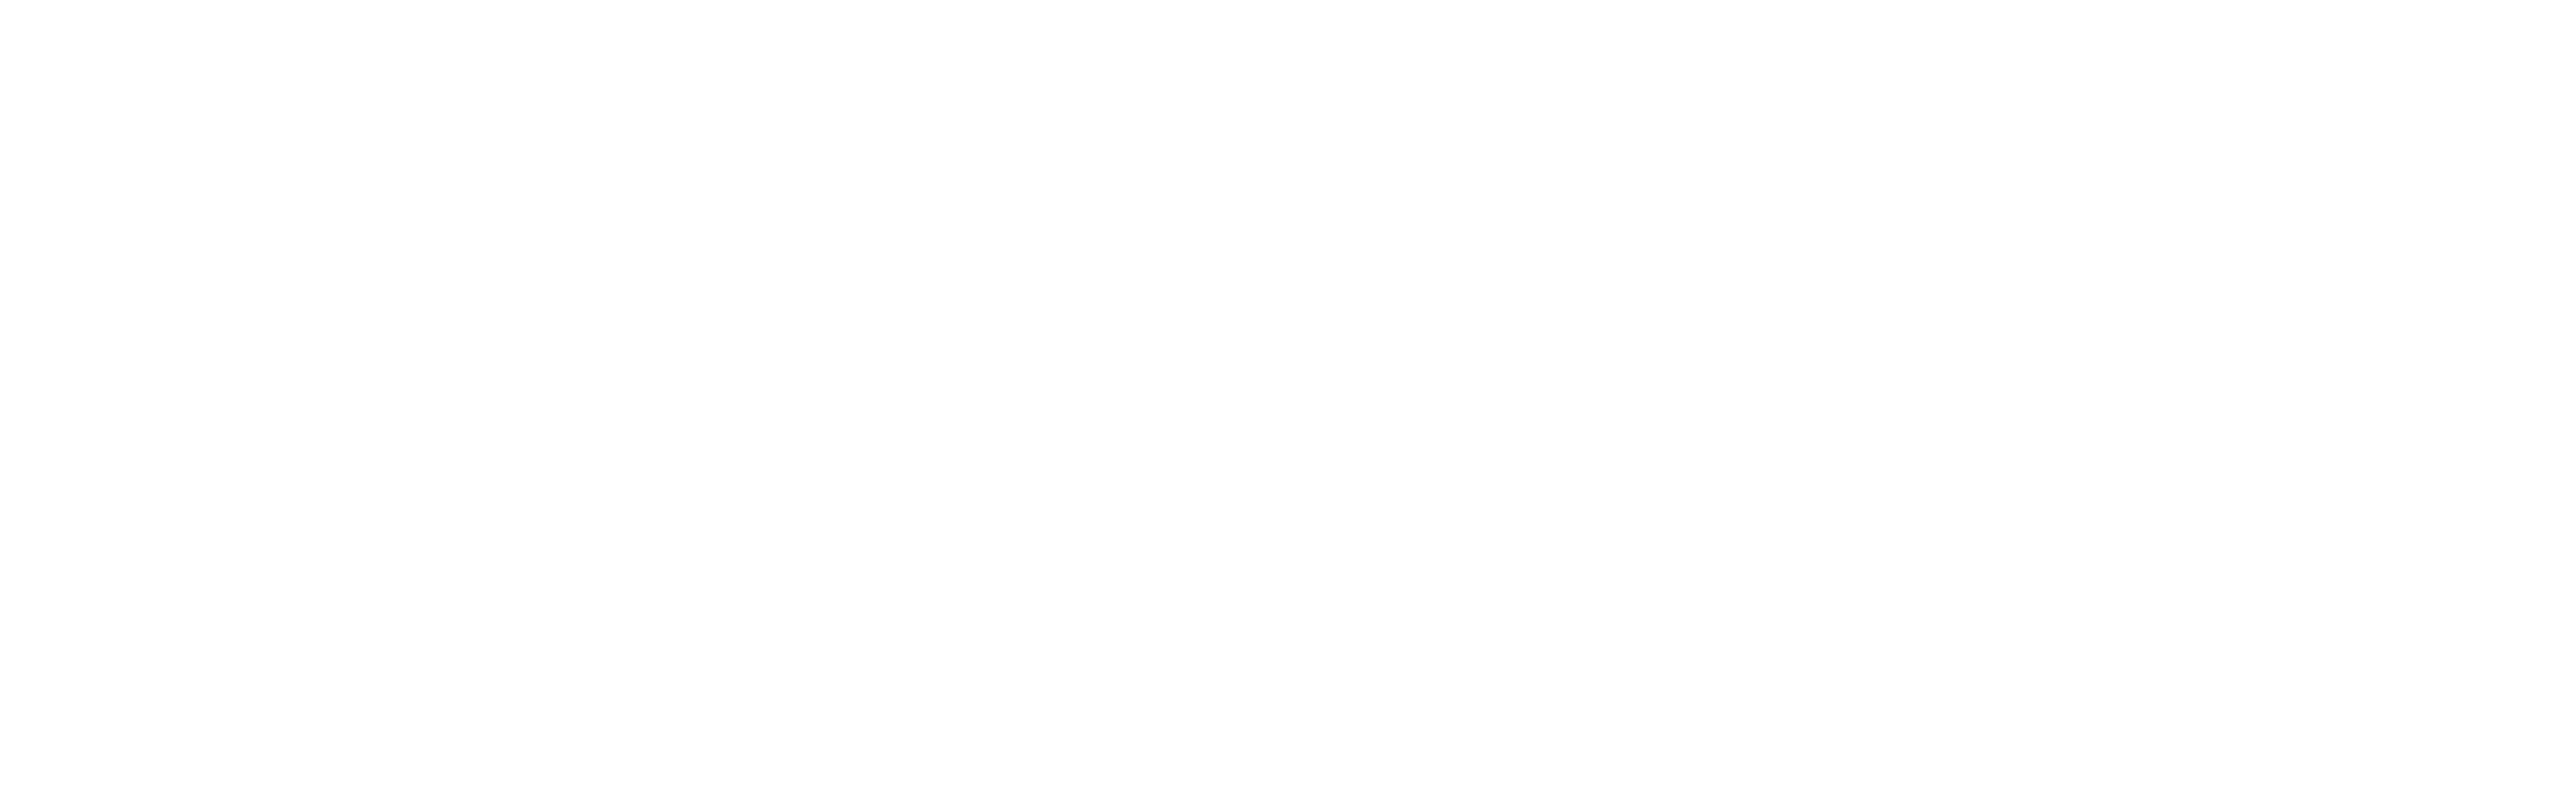 Avi The Gem Guy Logo. Gems, diamonds, fine jewelry.